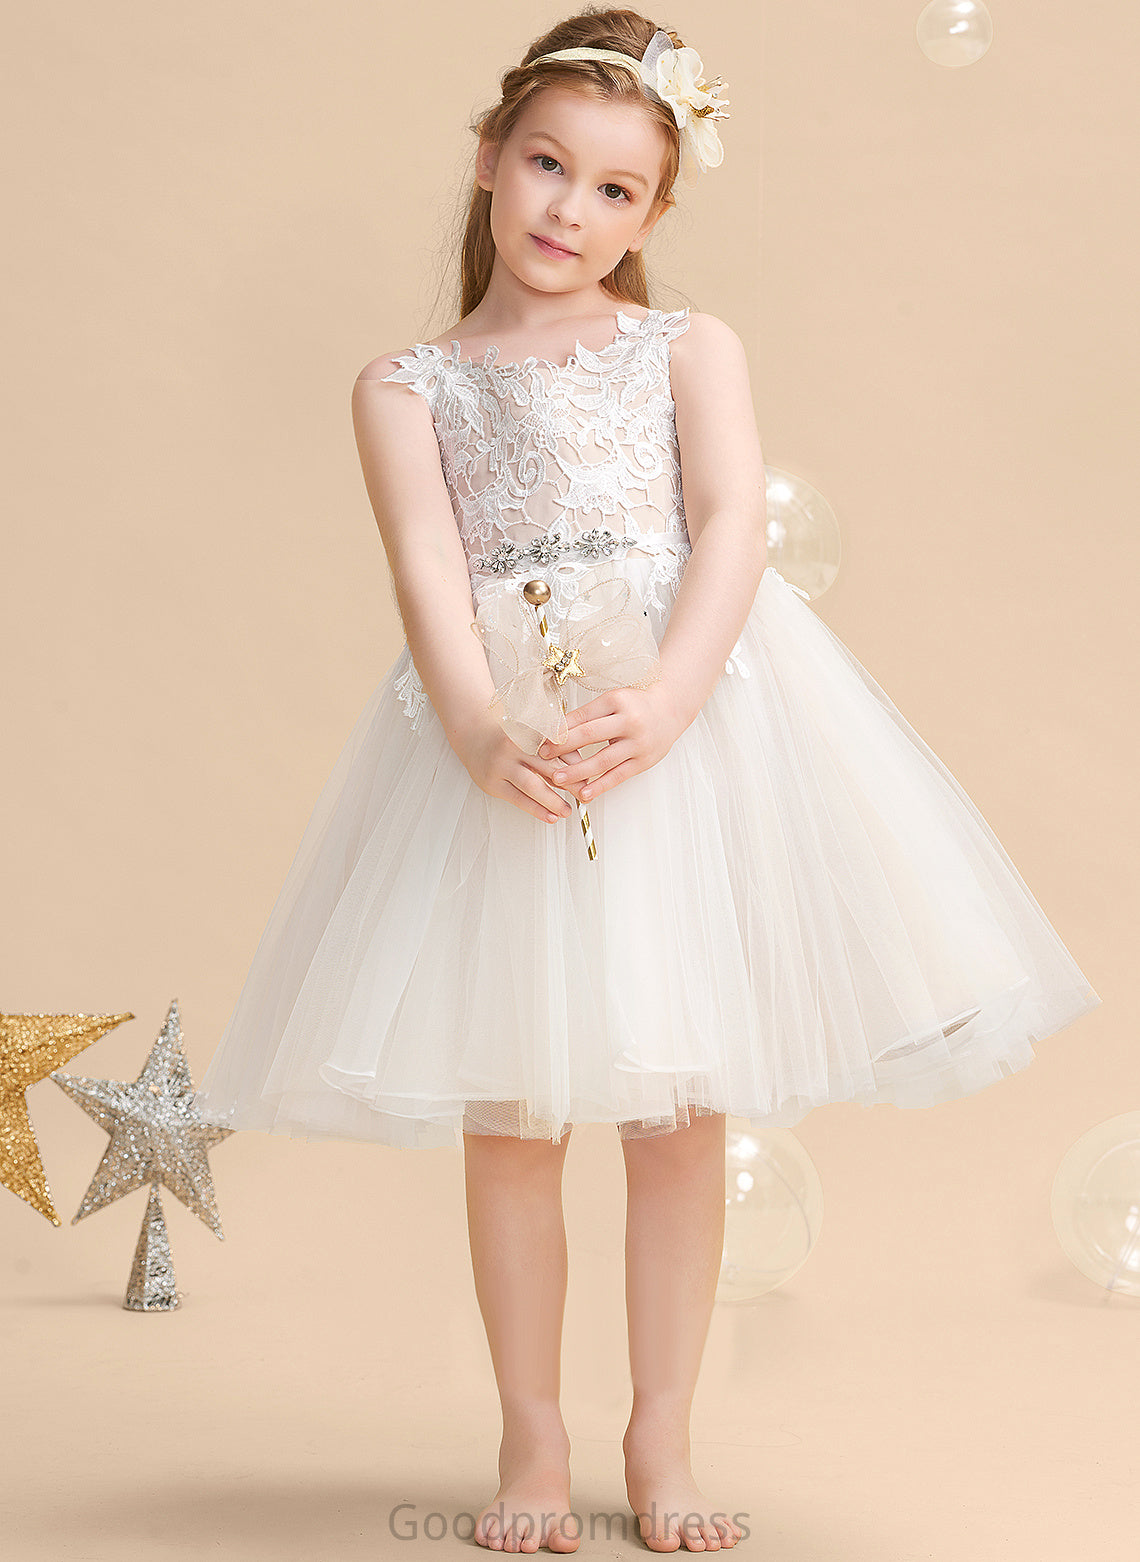 Tulle/Lace - Dress Sleeveless Straps A-Line Girl Flower Girl Dresses Rowan Knee-length Flower